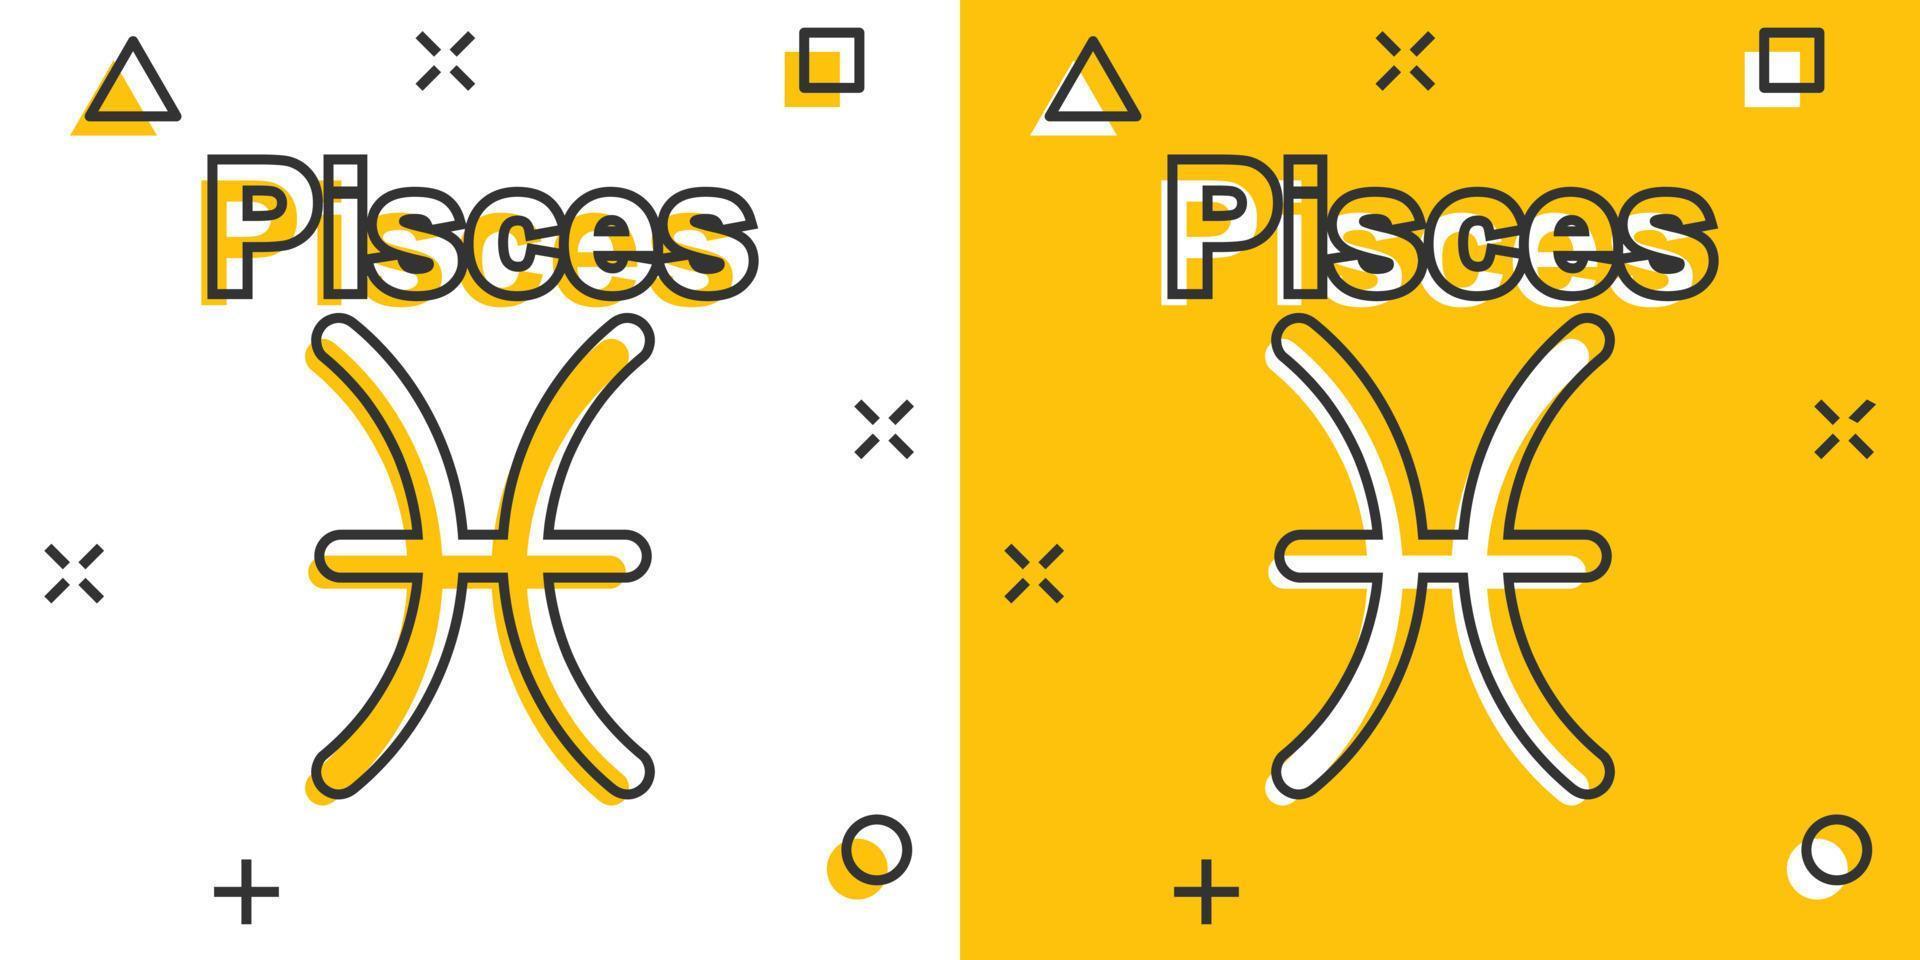 icône de zodiaque poissons de dessin animé de vecteur dans le style comique. pictogramme d'illustration de signe d'astrologie. concept d'effet splash d'entreprise horoscope poissons.